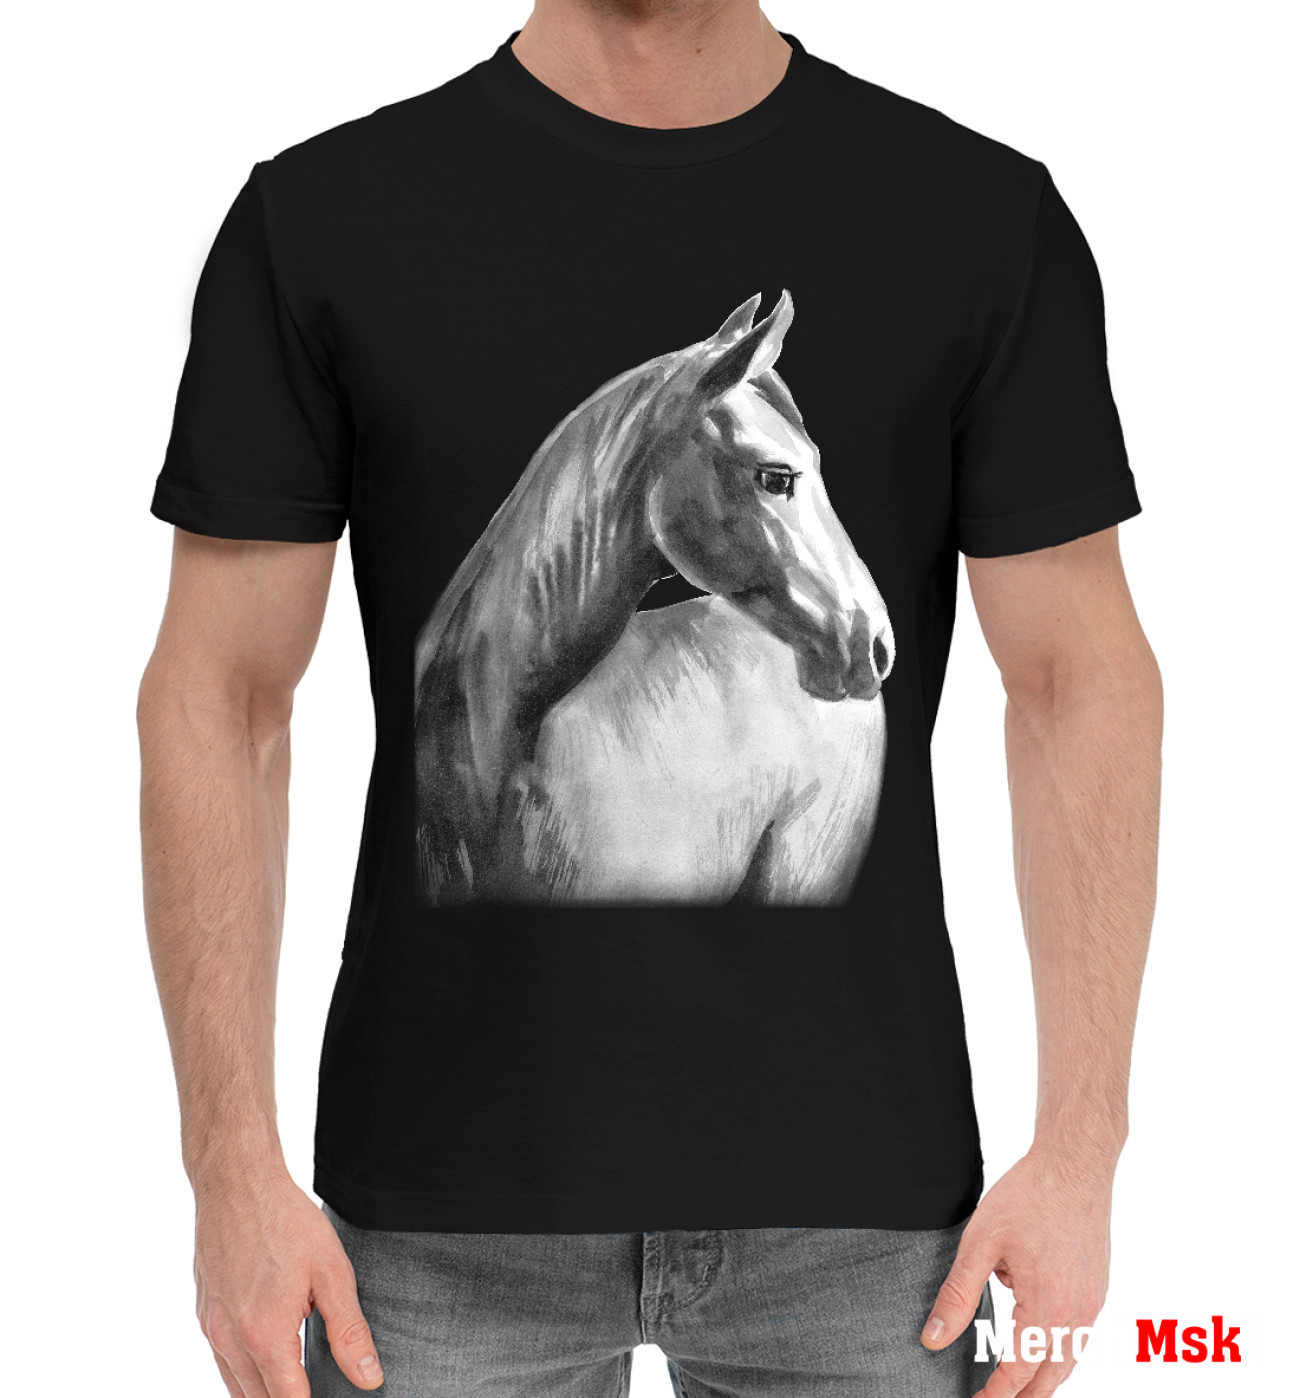 Мужская Хлопковая футболка Мечтательный конь, артикул: LOS-678594-hfu-2